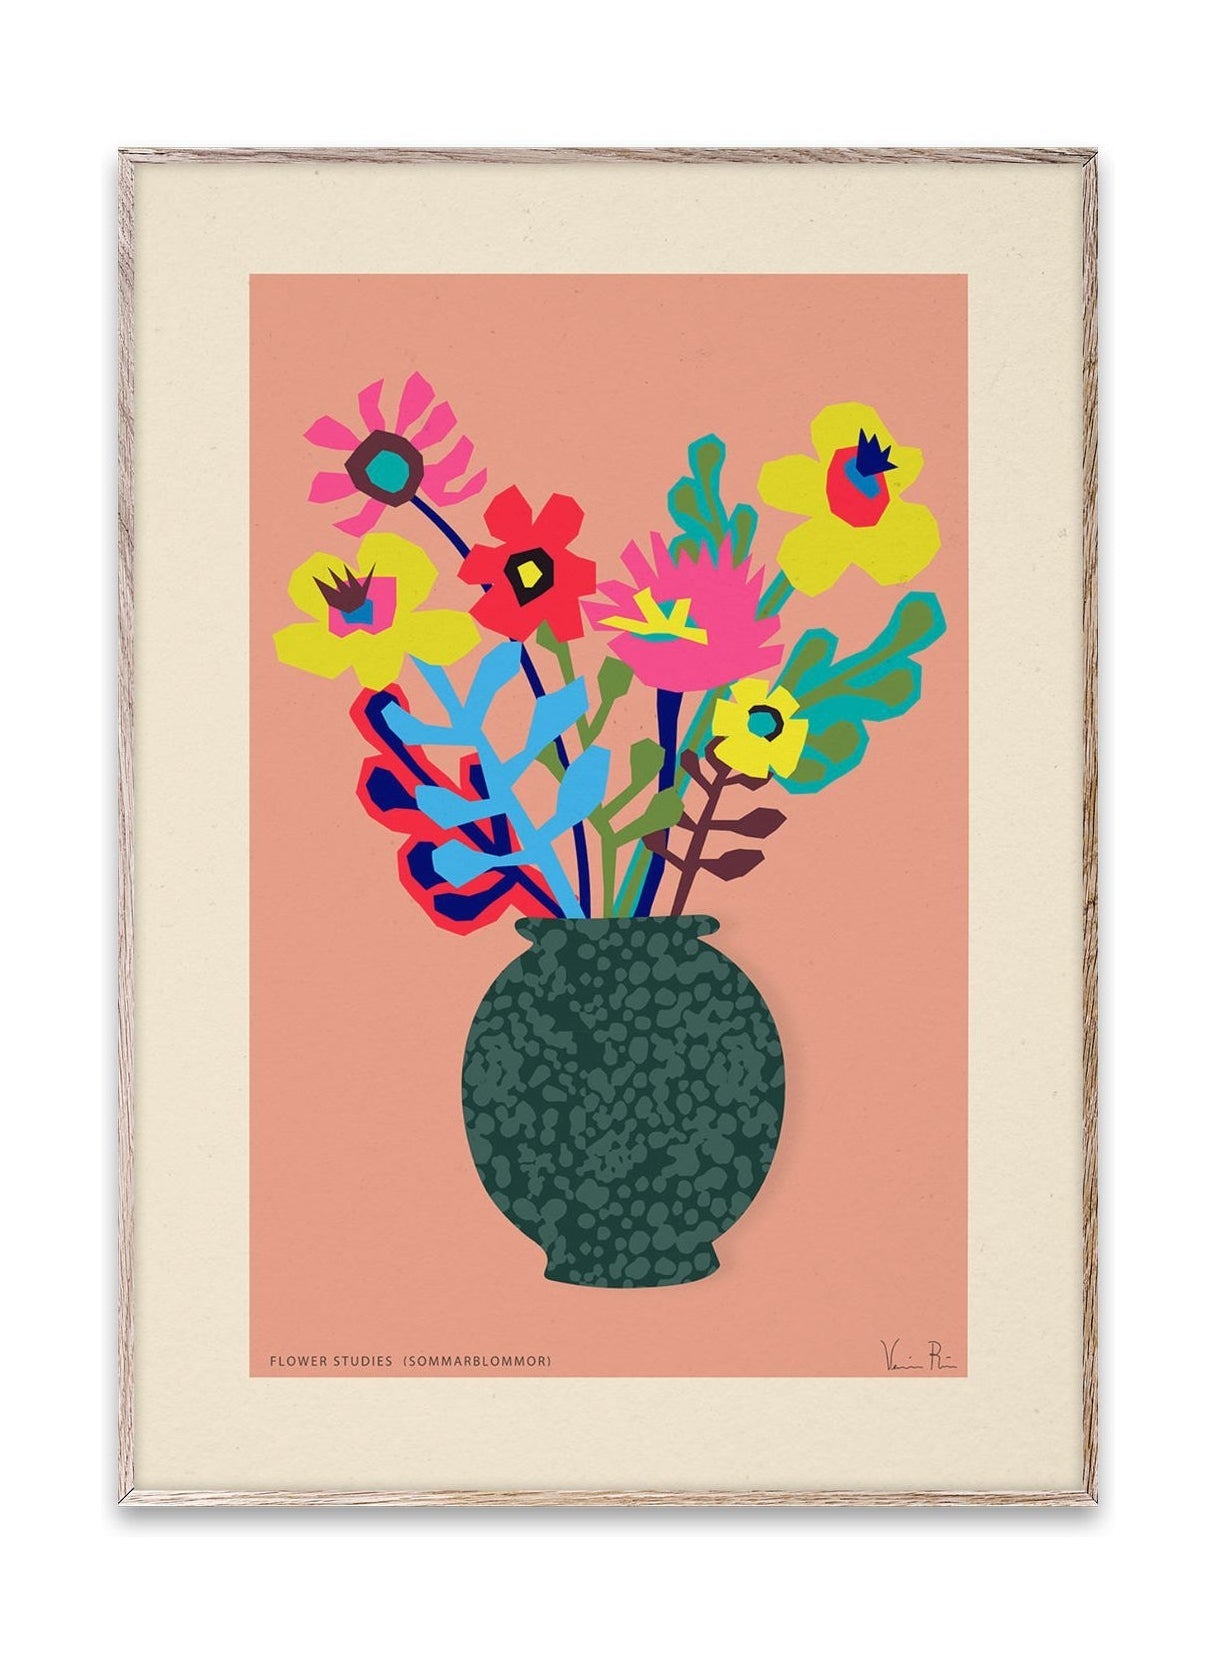 Paper Collective Flower Studies 02 (Sommarblommar) affisch, 50x70 cm